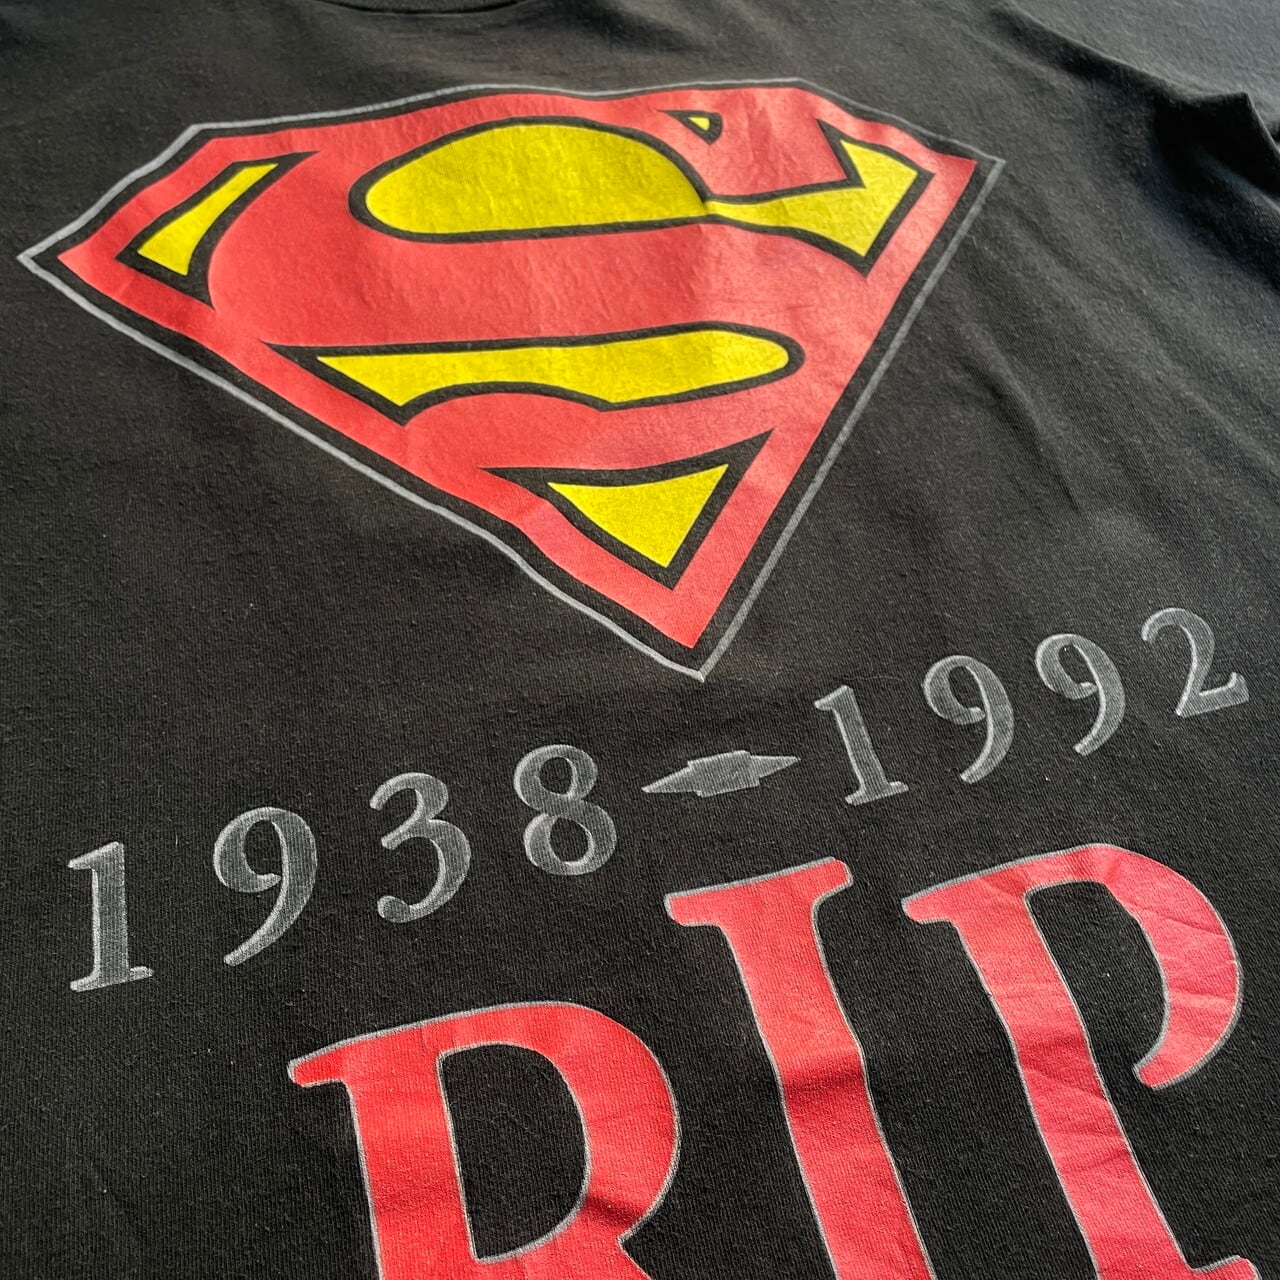 ヴィンテージ スーパーマン Tシャツ 40s